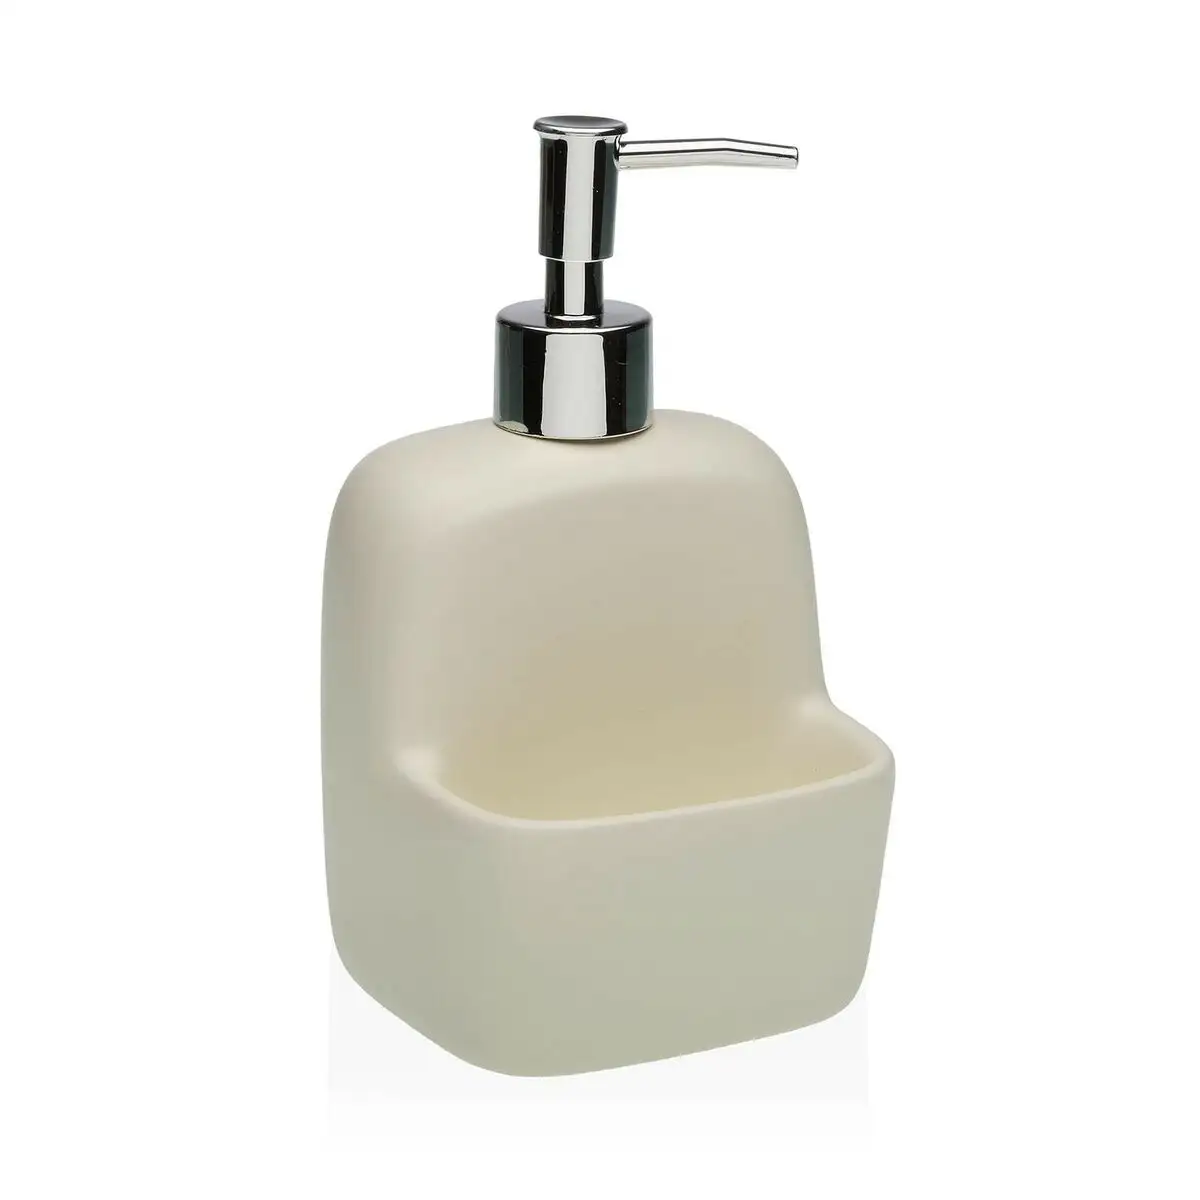 Distributeur de savon versa beige ceramique_8705. DIAYTAR SENEGAL - Votre Plateforme Shopping de Confiance. Naviguez à travers nos rayons et choisissez des produits fiables qui répondent à vos besoins quotidiens.